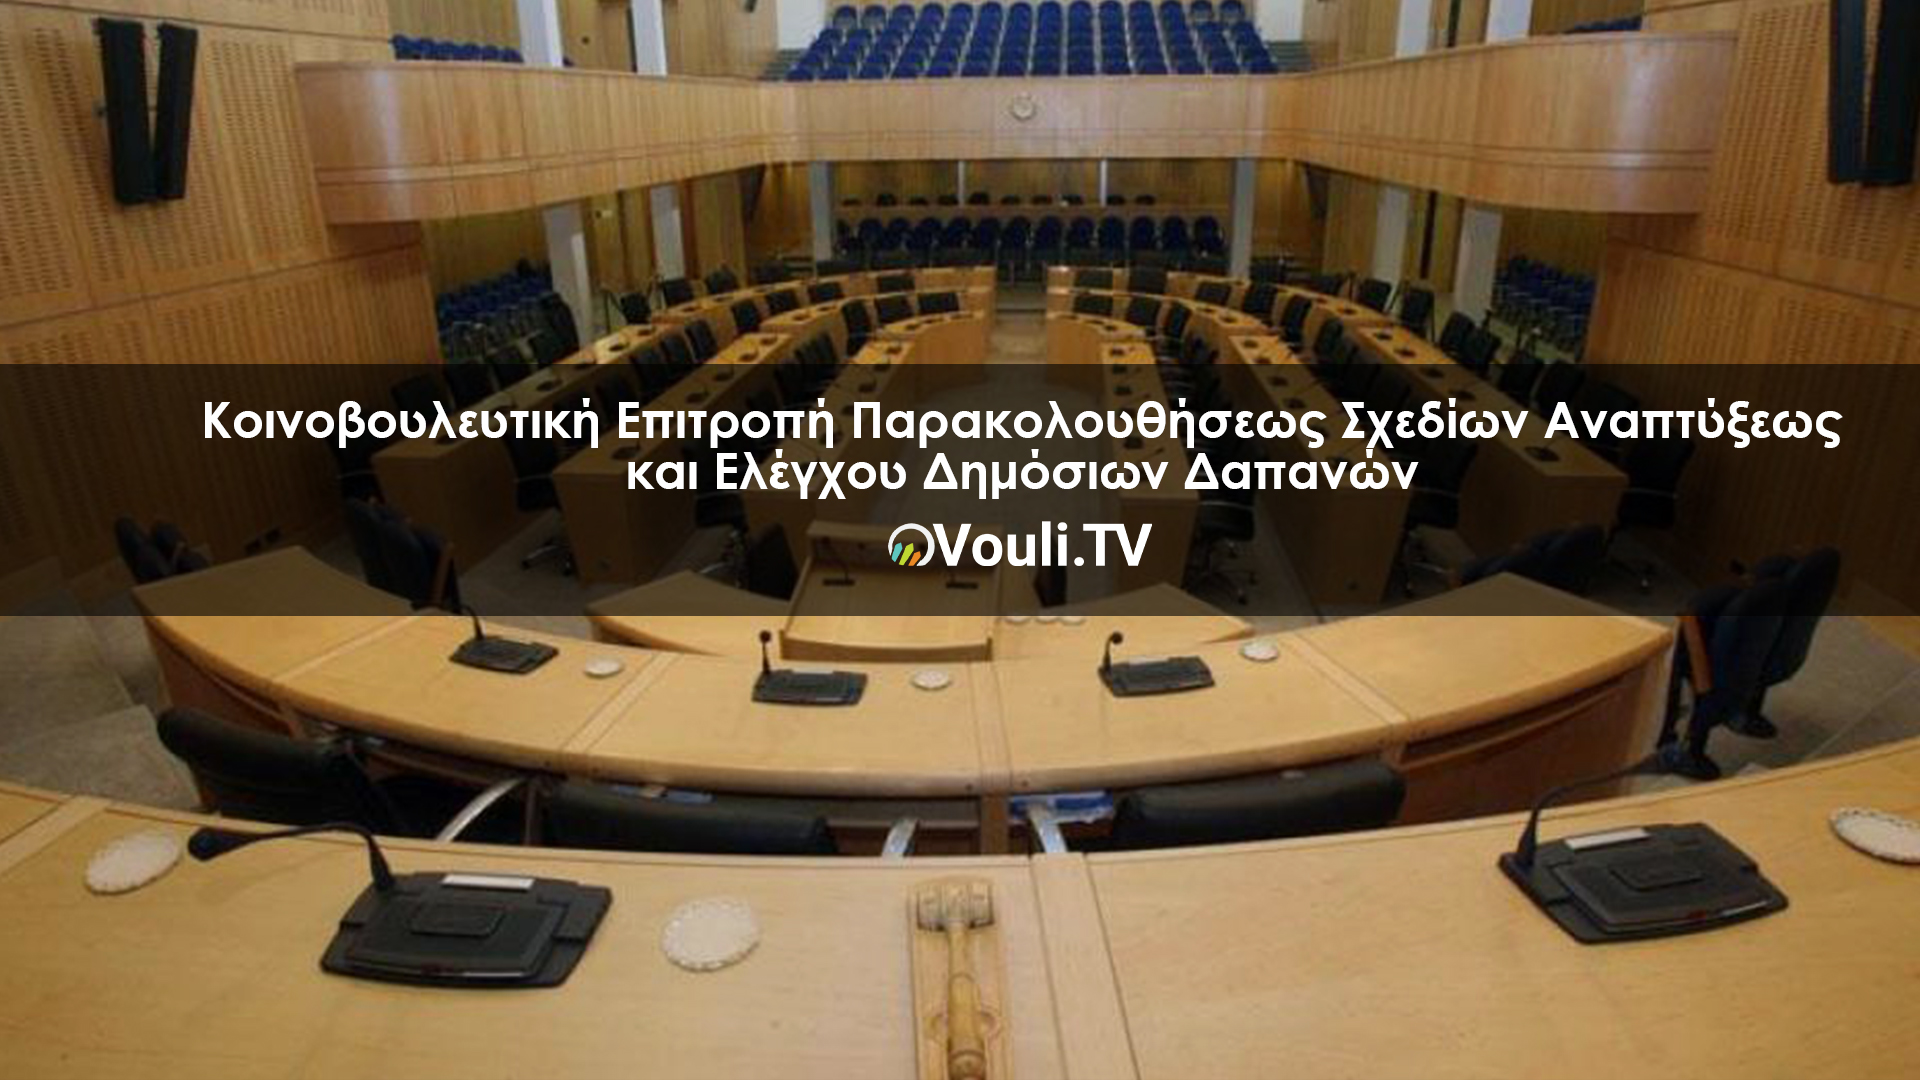 Κοινοβουλευτική Επιτροπή Παρακολουθήσεως Σχεδίων Αναπτύξεως και Ελέγχου Δημόσιων Δαπανών | Vouli report 05/05/2022